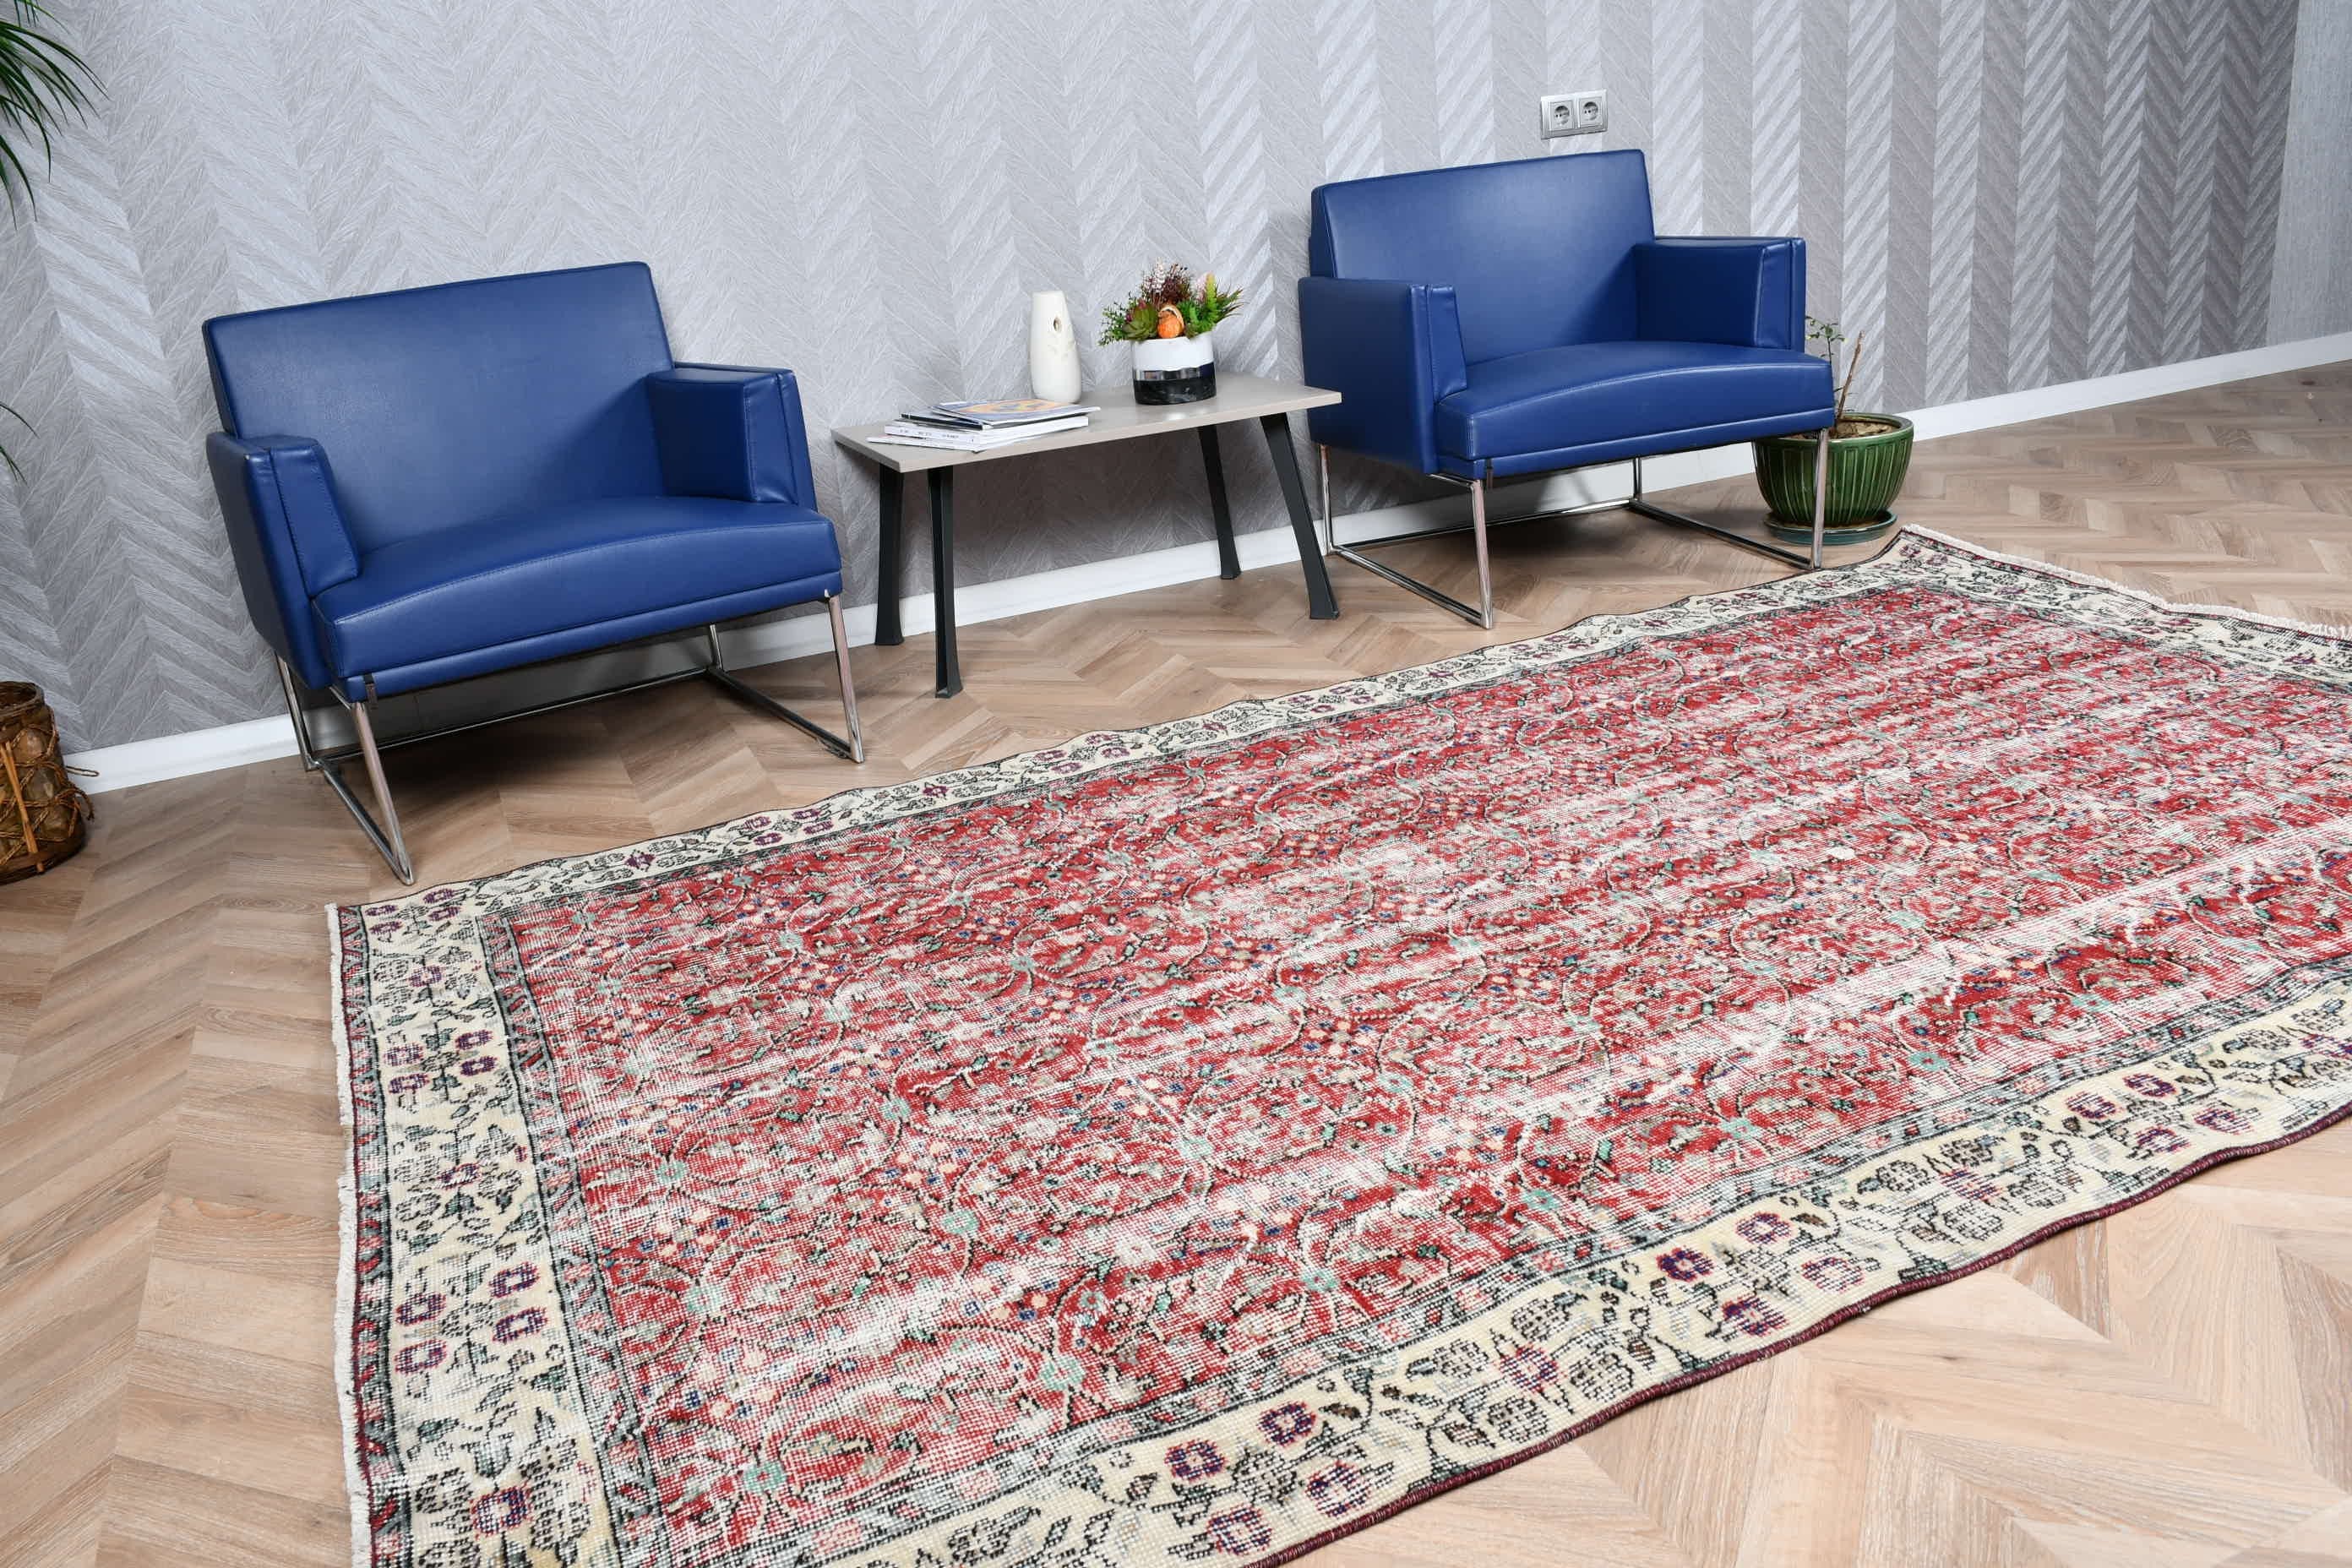 Bedroom Rug, Oriental Rug, Red  5.5x8.9 ft Large Rugs, Vintage Rug, Turkish Rug, Rugs for Living Room, Dining Room Rugs